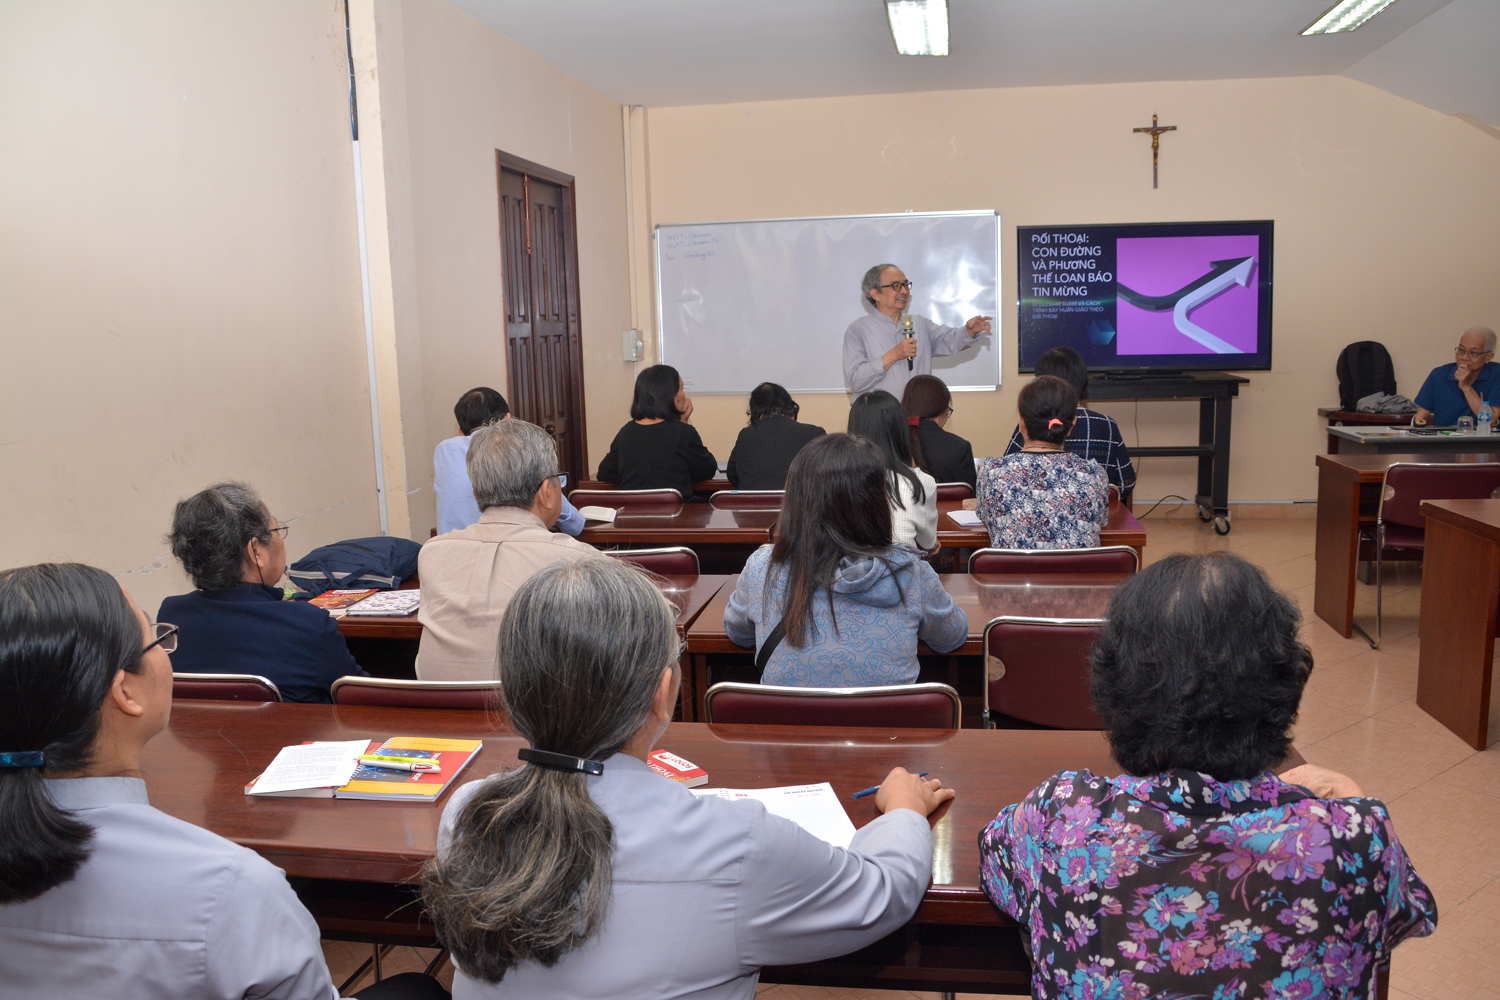 Trung tâm Mục vụ TGP Sài Gòn: Gặp gỡ Giáo lý viên phụ trách các lớp giáo lý Dự tòng và Hôn nhân ngày 24-10-2020